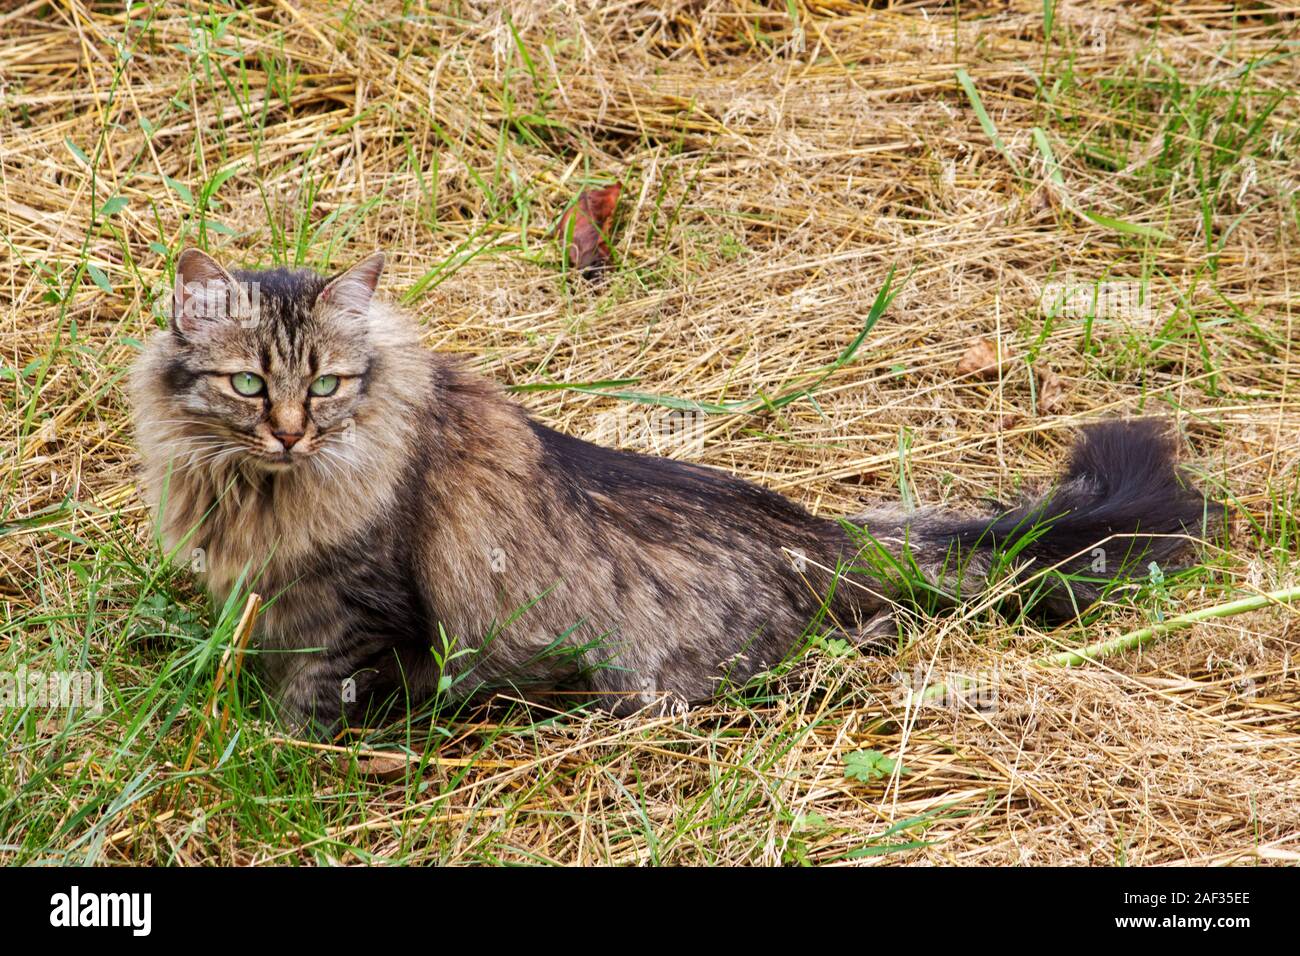 Il tedesco longhair cat si siede in un prato e osserva l'ambiente con i suoi grandi occhi verdi Foto Stock